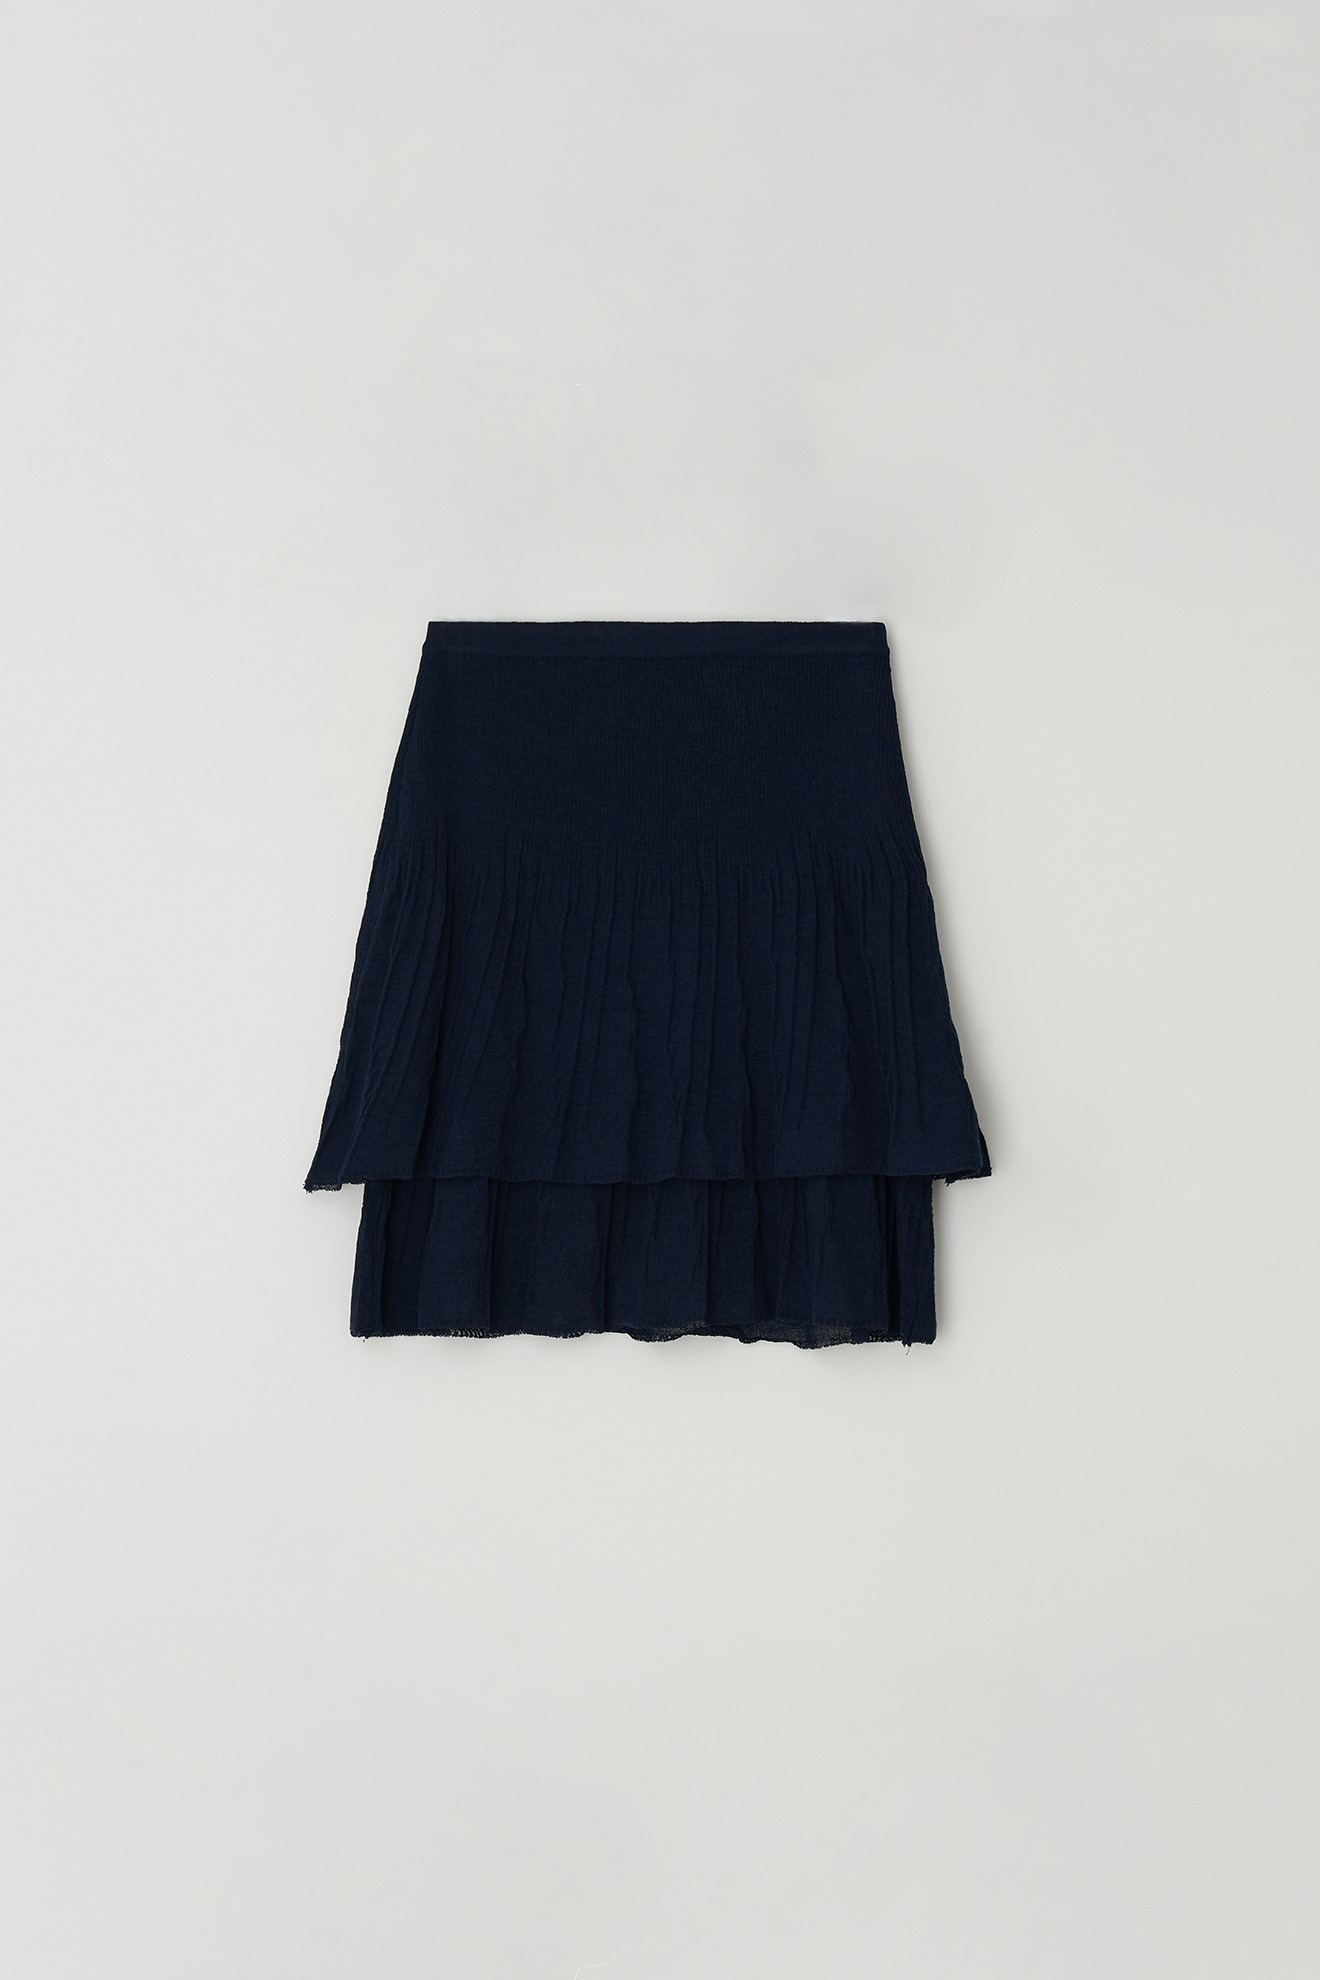 Flare Skirt (navy)